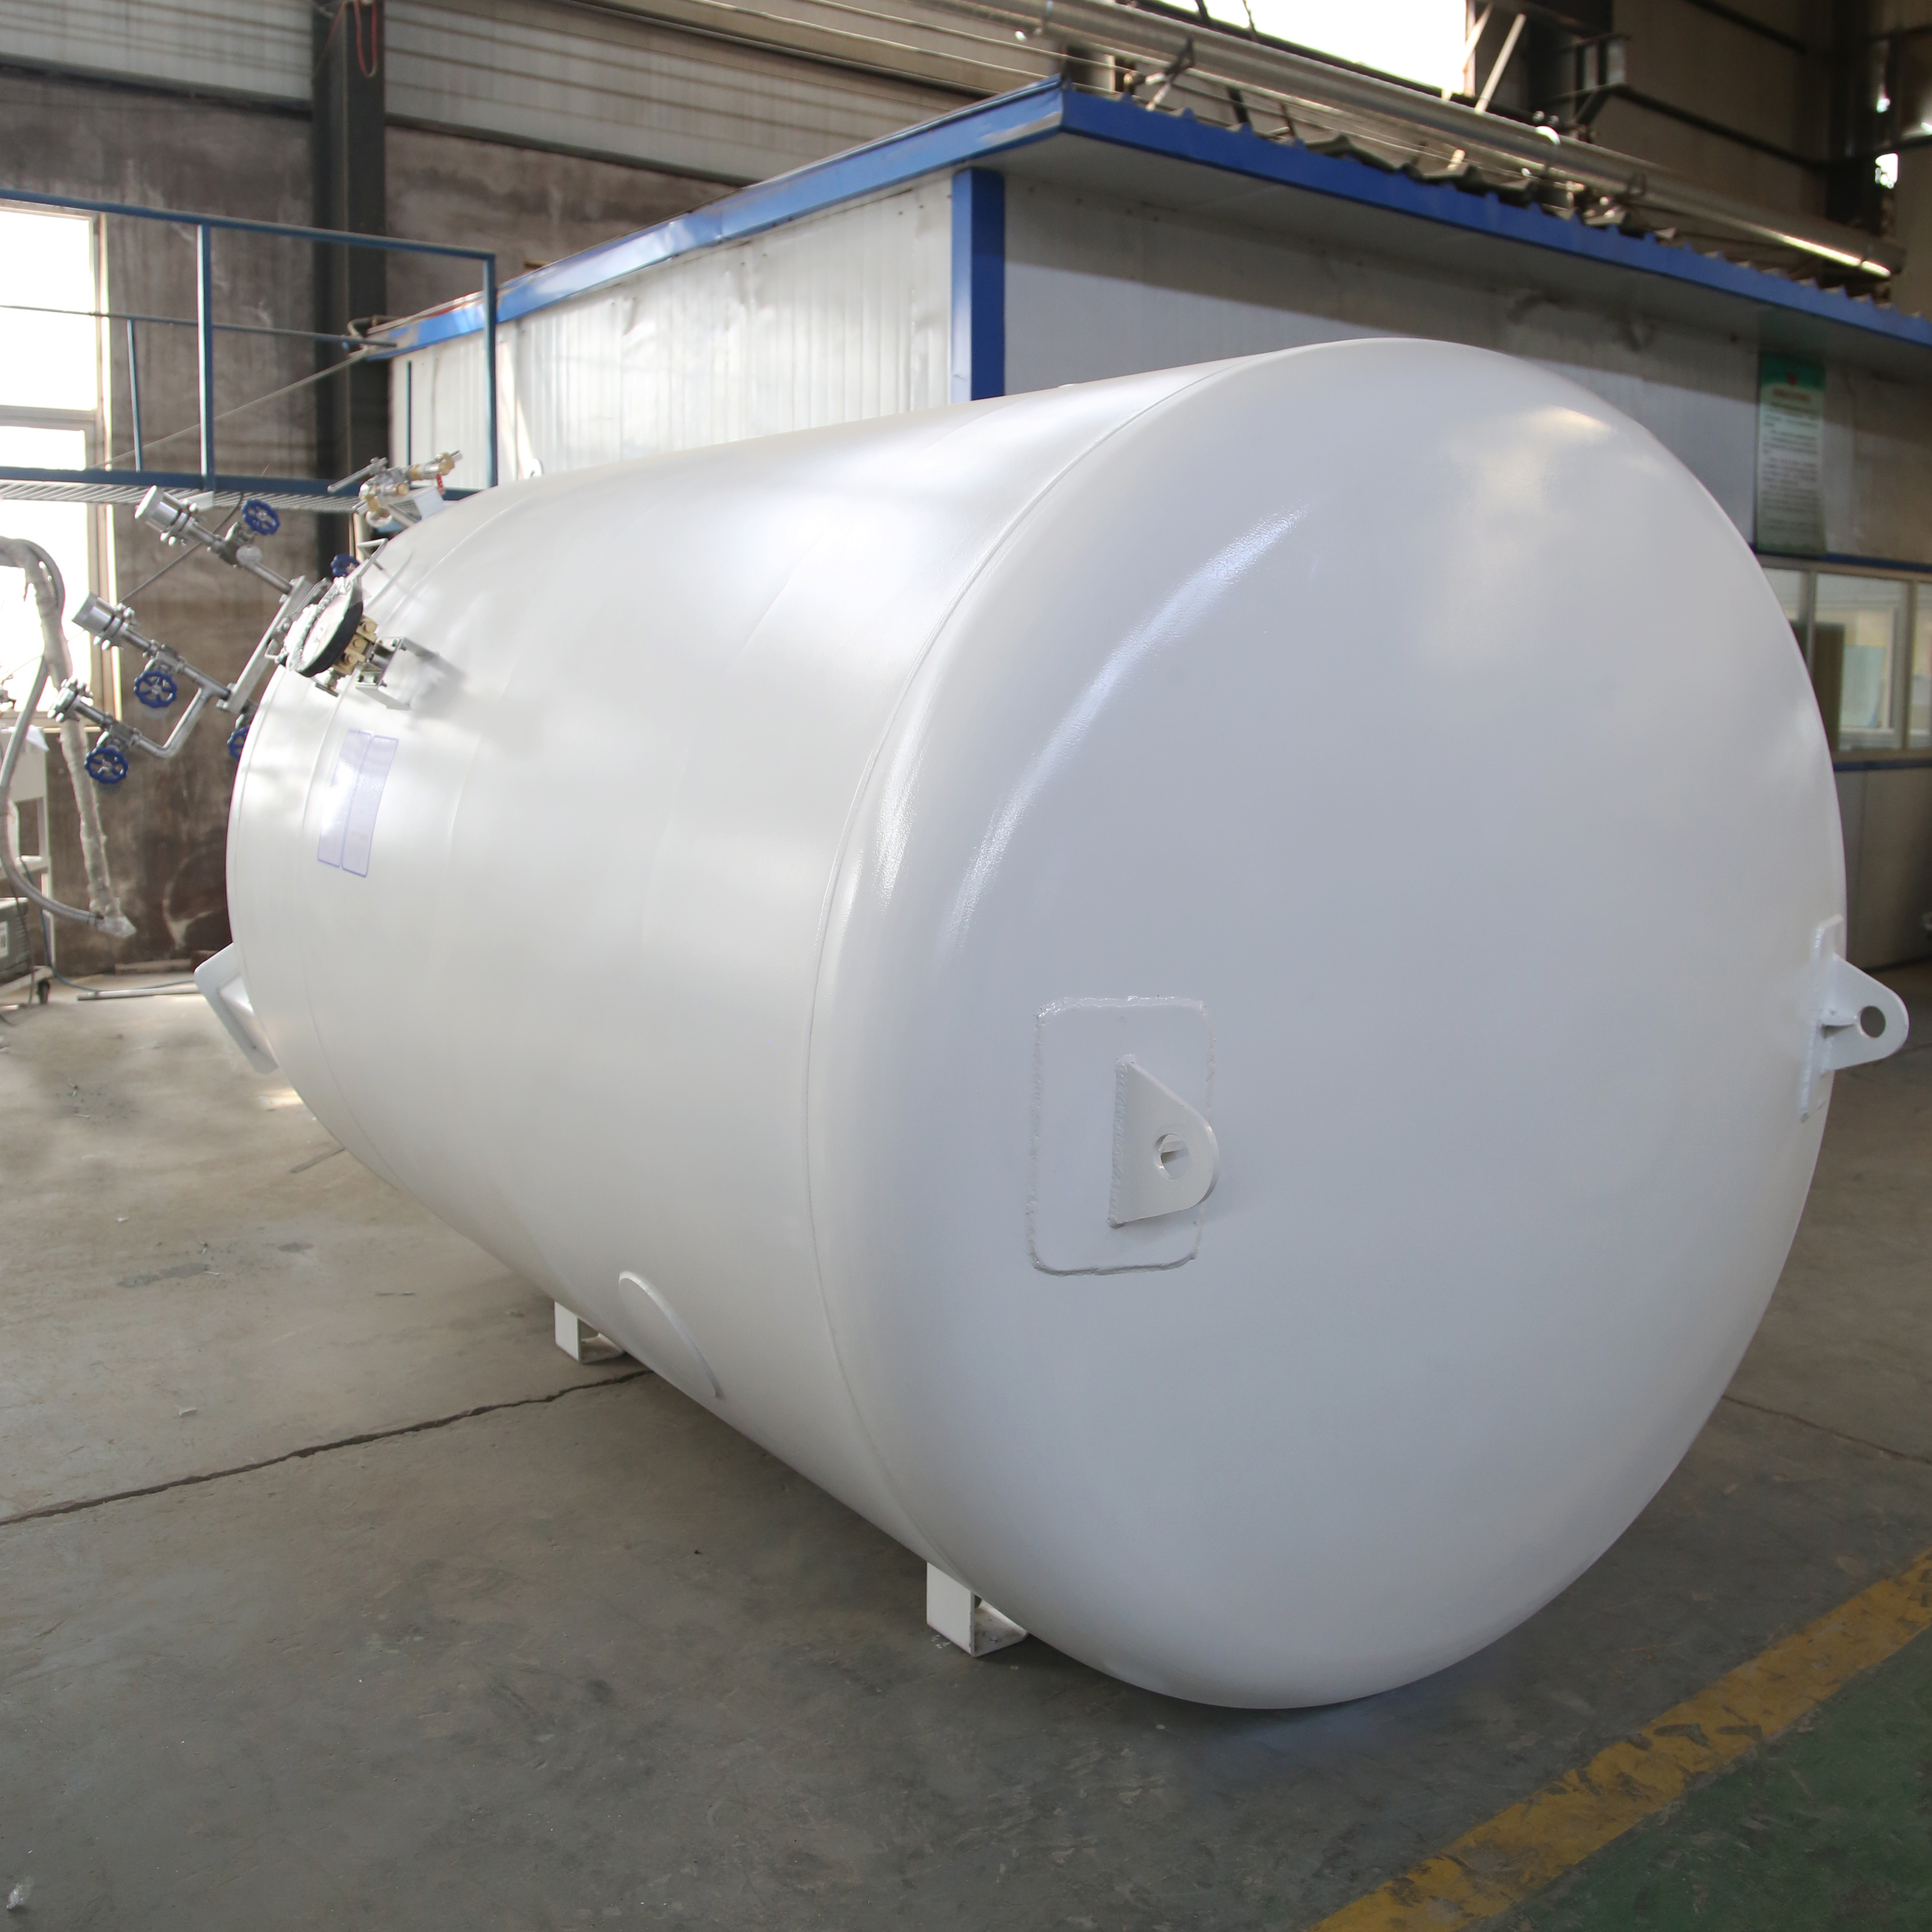 Ensuring LNG Storage Tank Safety During Transportation